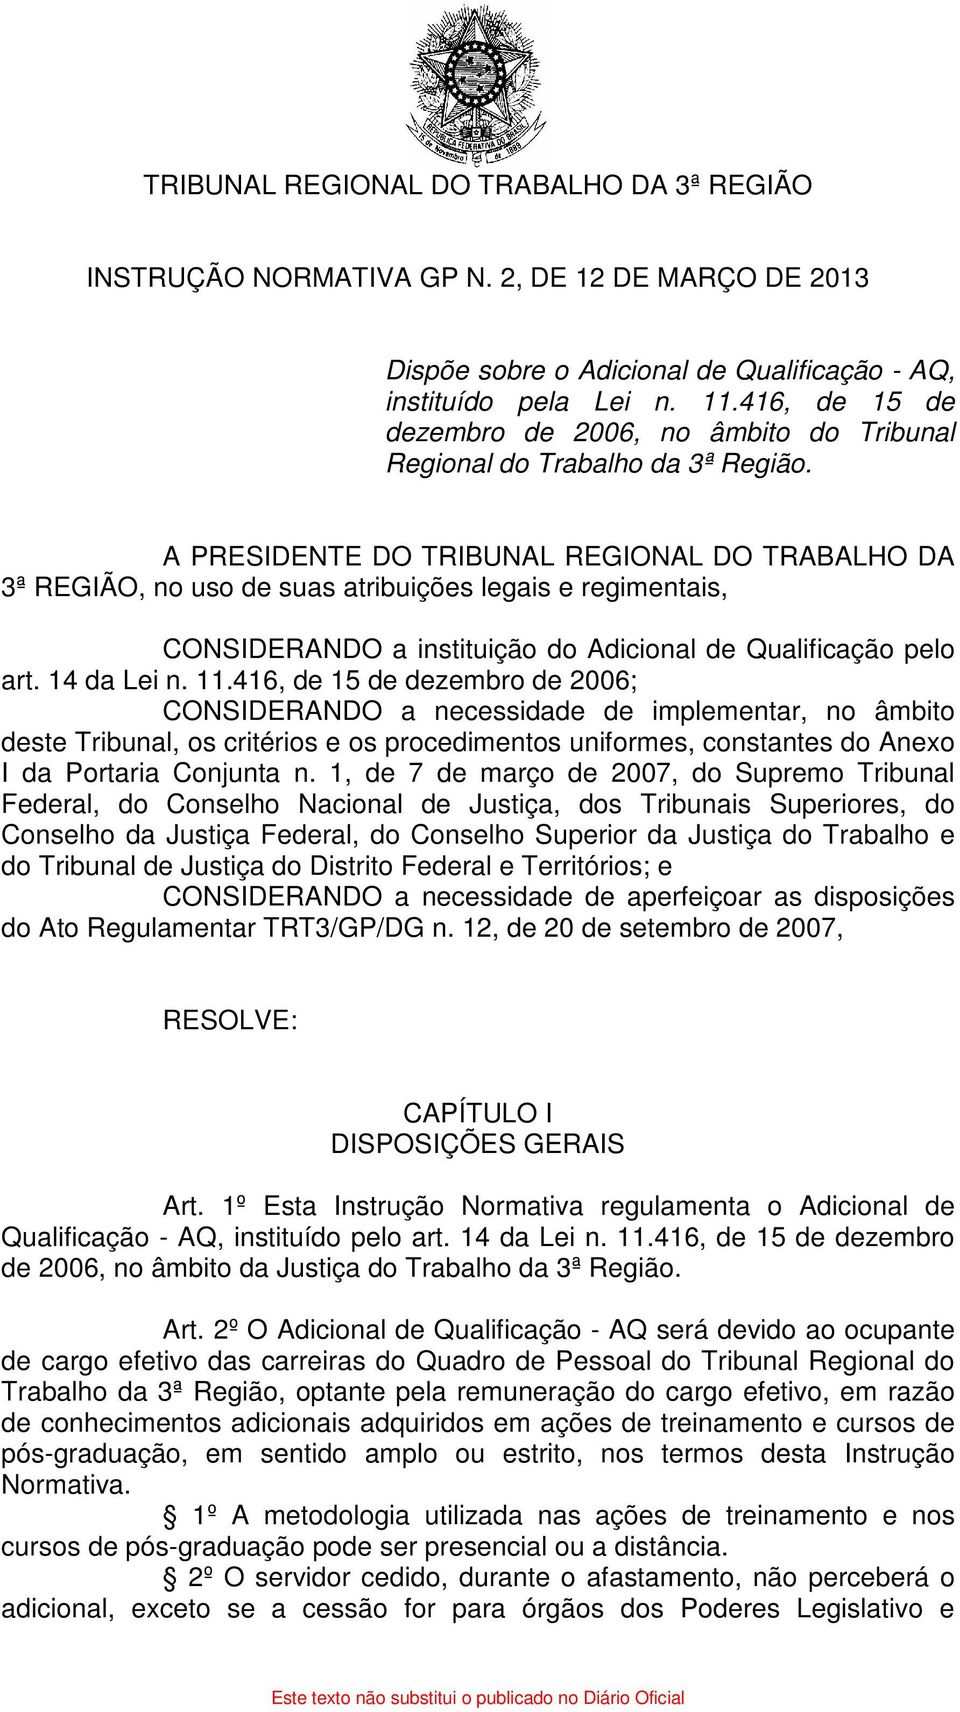 A PRESIDENTE DO TRIBUNAL REGIONAL DO TRABALHO DA 3ª REGIÃO, no uso de suas atribuições legais e regimentais, CONSIDERANDO a instituição do Adicional de Qualificação pelo art. 14 da Lei n. 11.